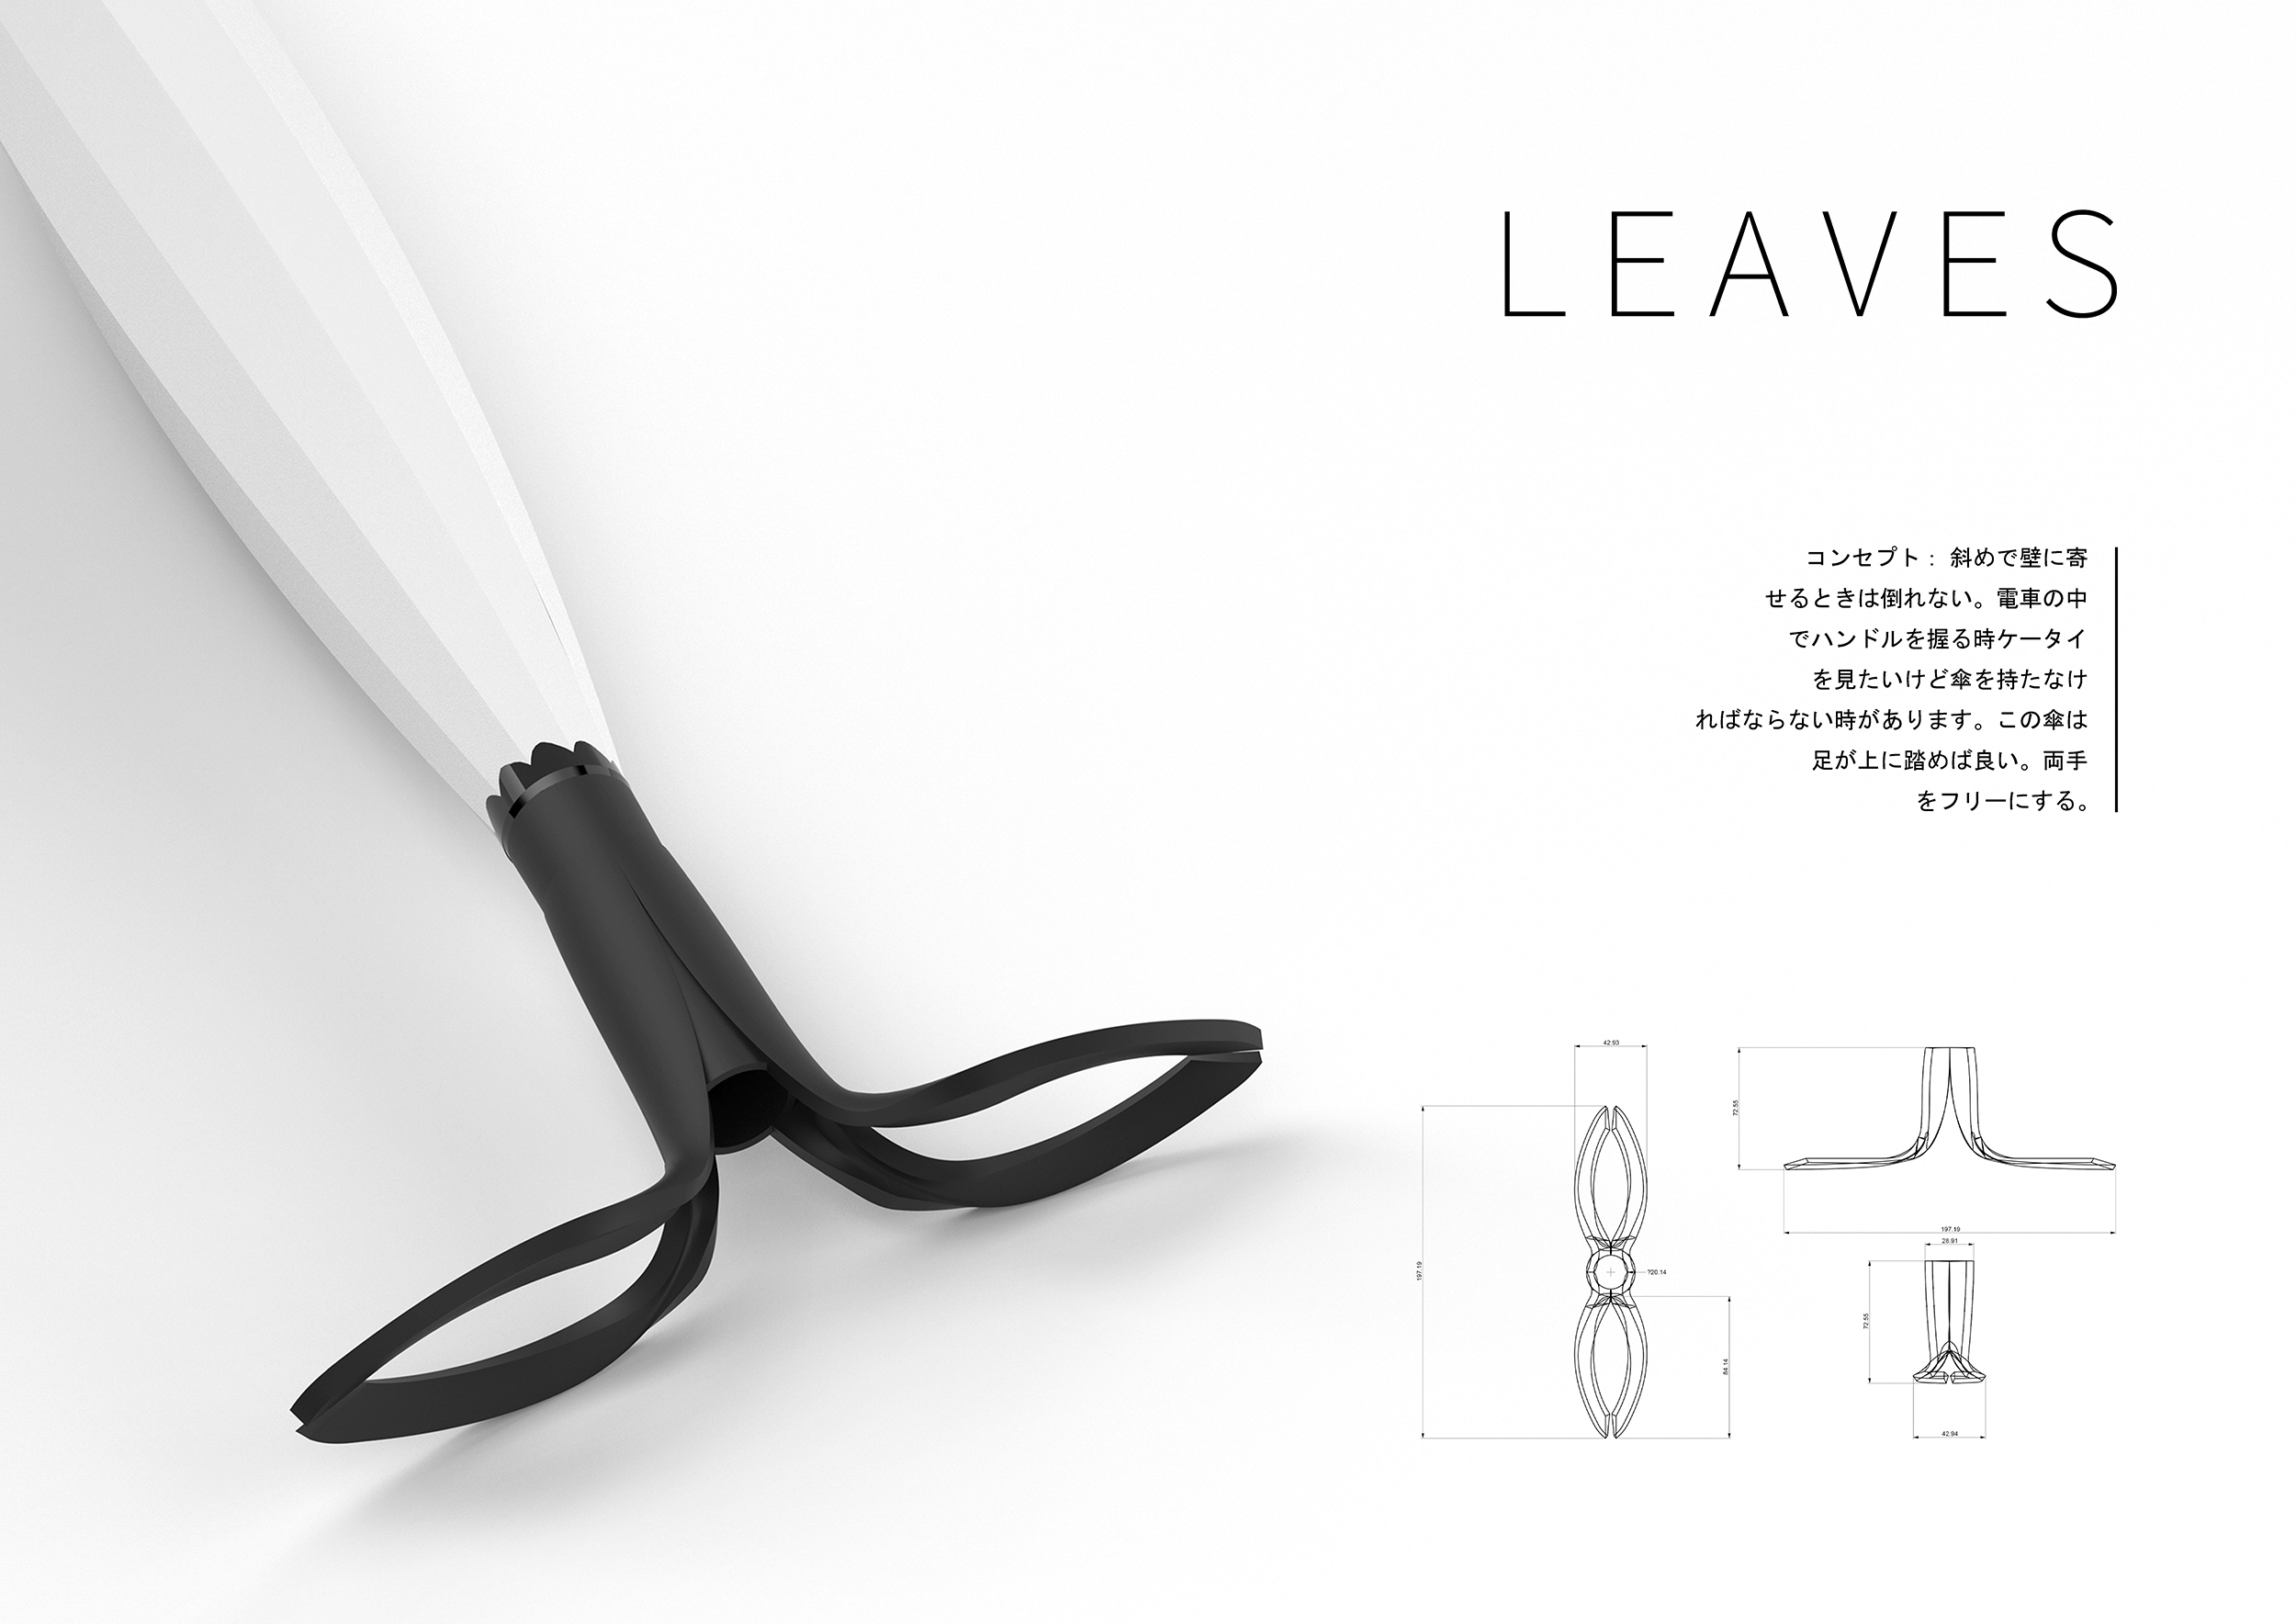 お知らせ 傘のoem 製造 大阪のレイングッズメーカー カムアクロス